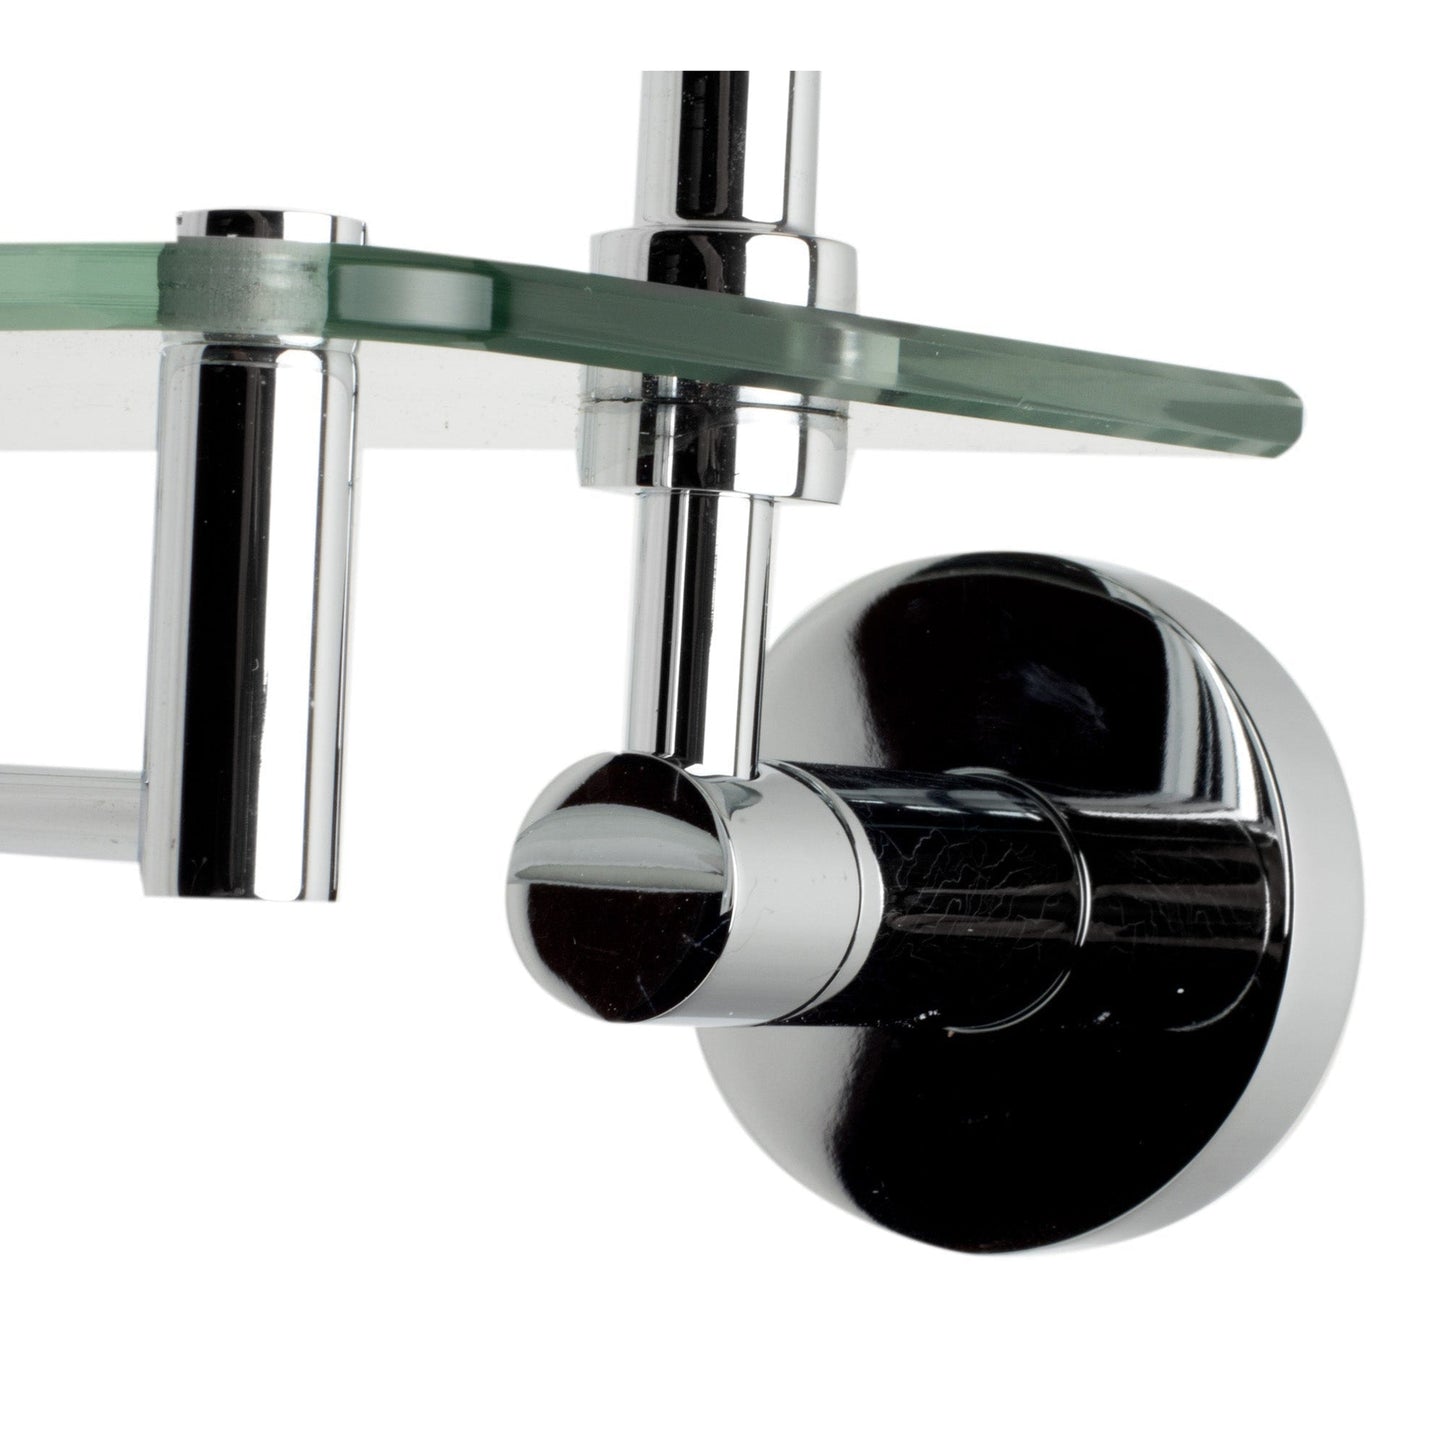 ALFI Brand AB9549 Polished Chrome Wall-Mounted Double Glass Shower Shelf Bathroom Accessory